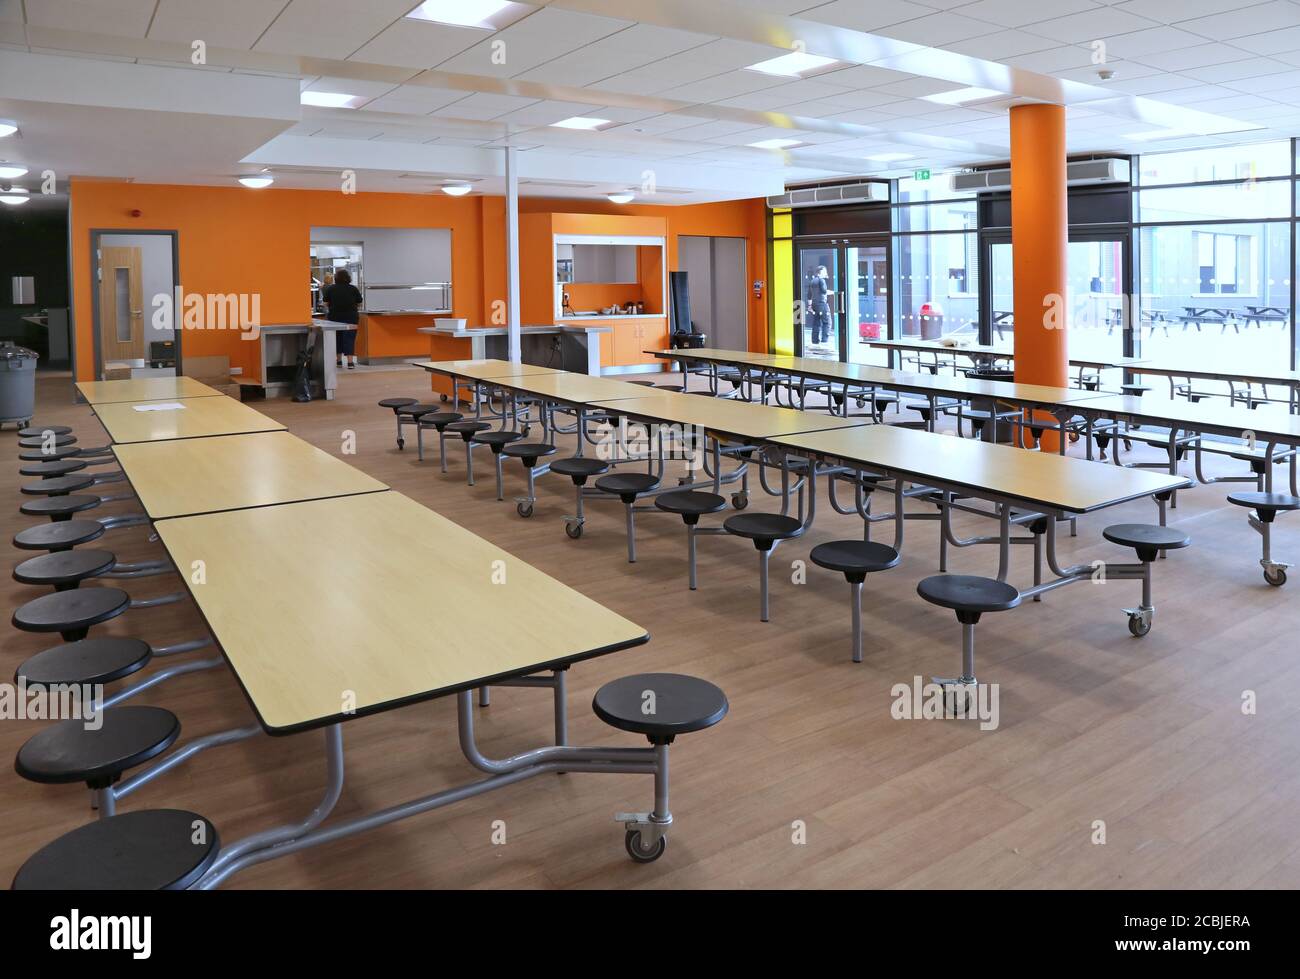 Faltbare Esstische werden im Speisesaal einer neuen, Londoner Sekundarschule für den Gebrauch vorbereitet aufgestellt. Stockfoto